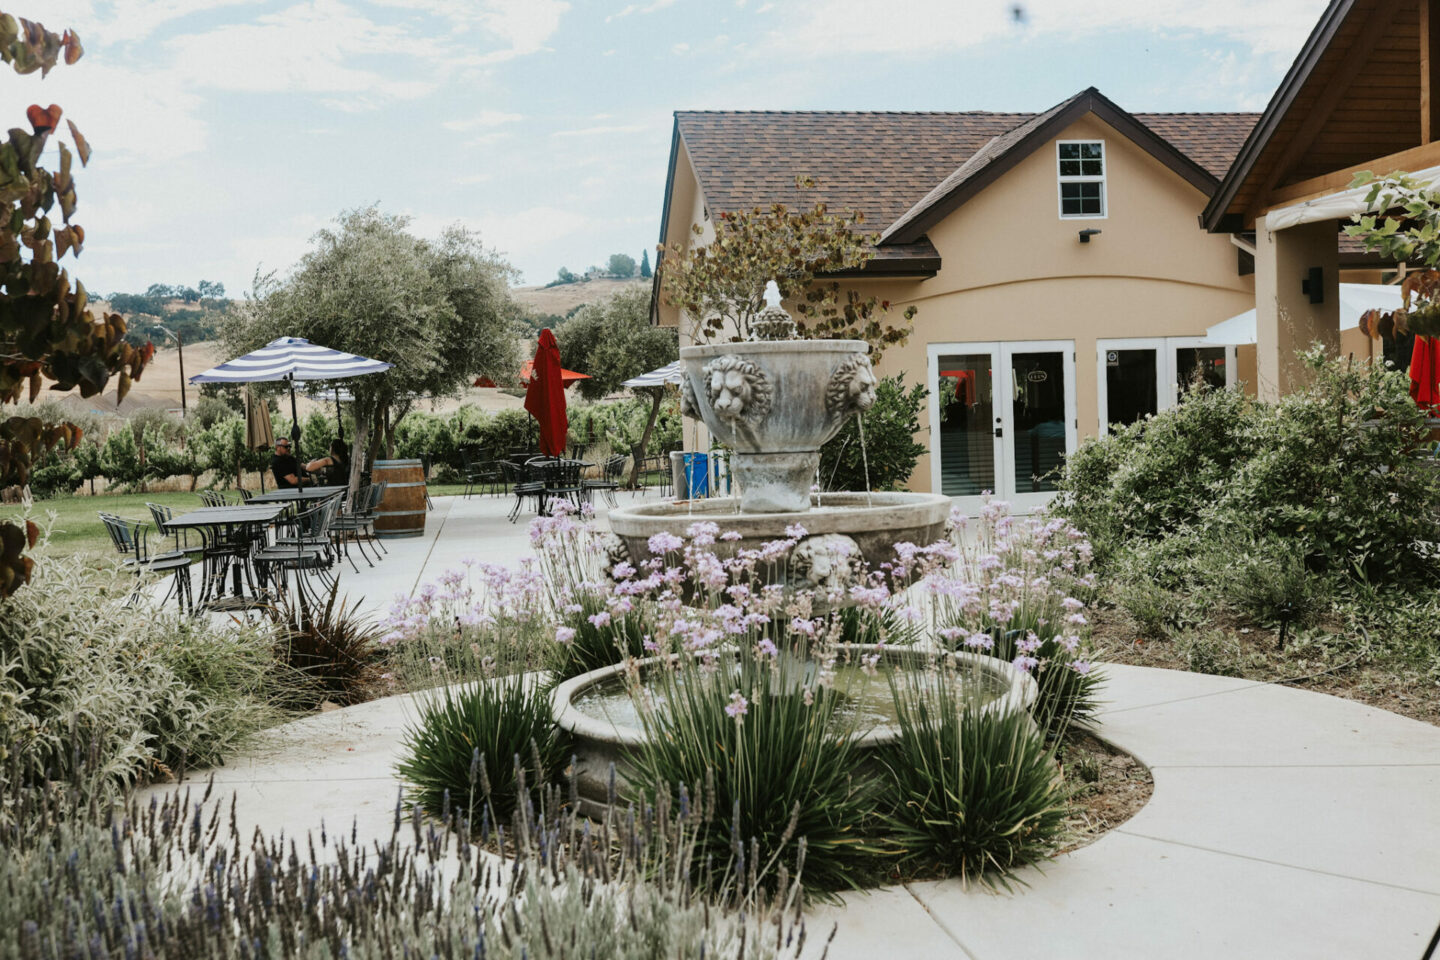 Lion Ranch tasting room in Santa Clara Valley